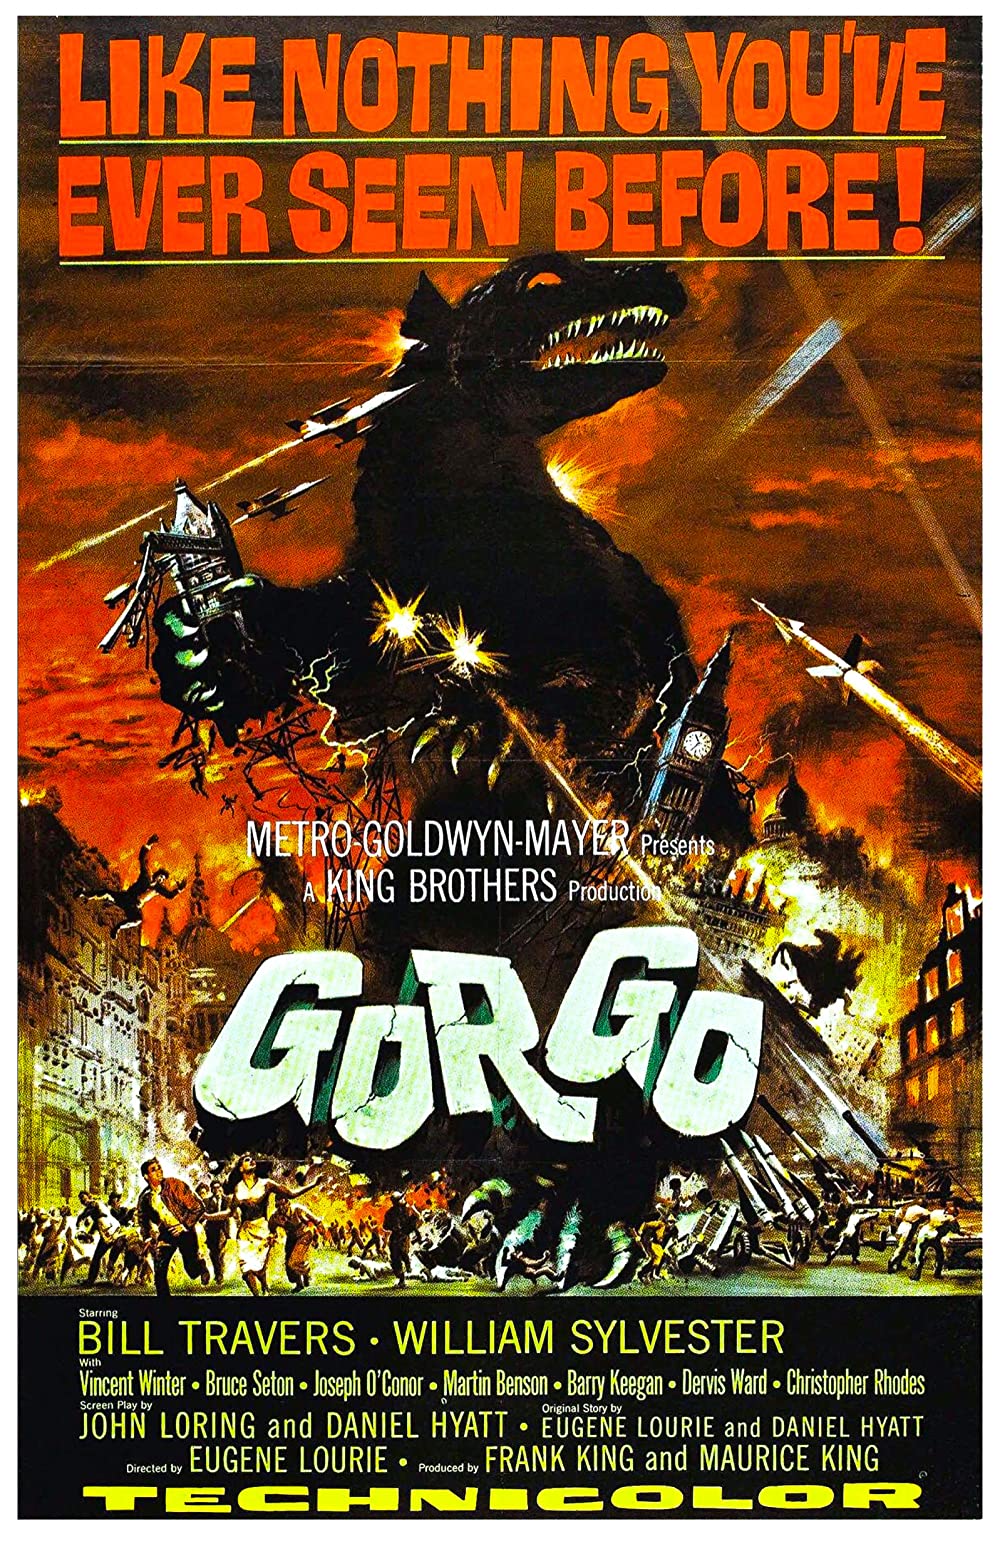 Filmbeschreibung zu Gorgo